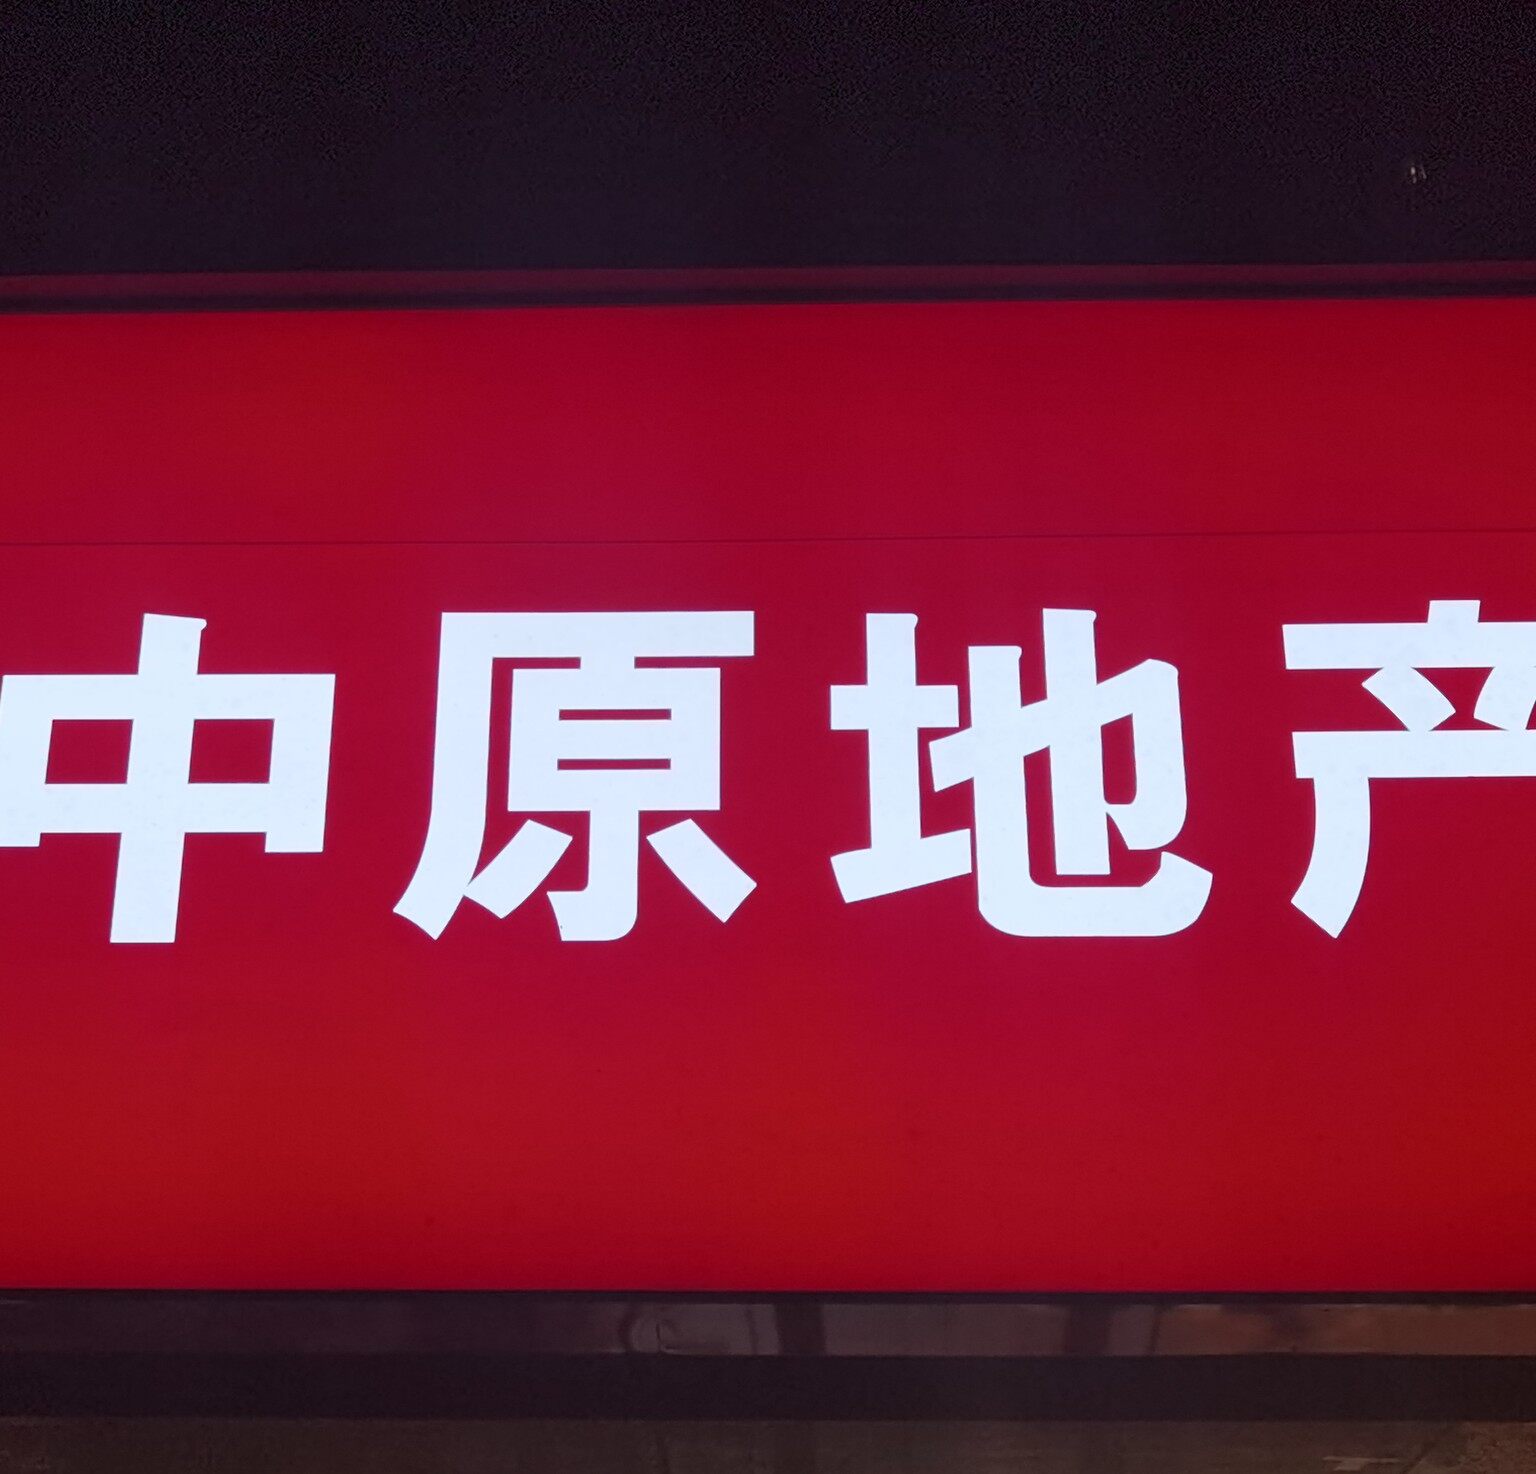 四川中原物业顾问有限公司成都后花园营业部logo